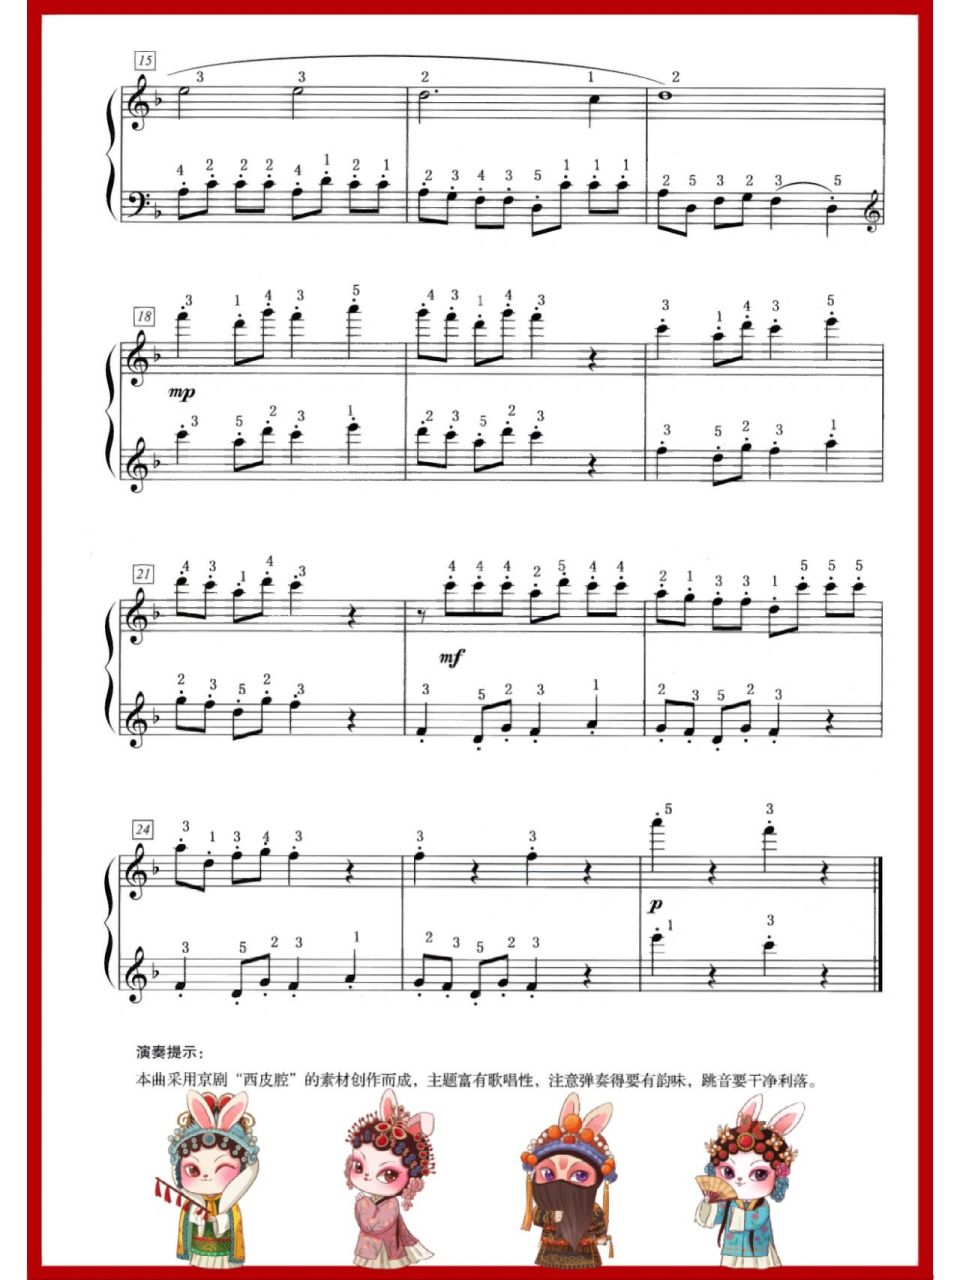 钢琴三级京剧小段简谱图片